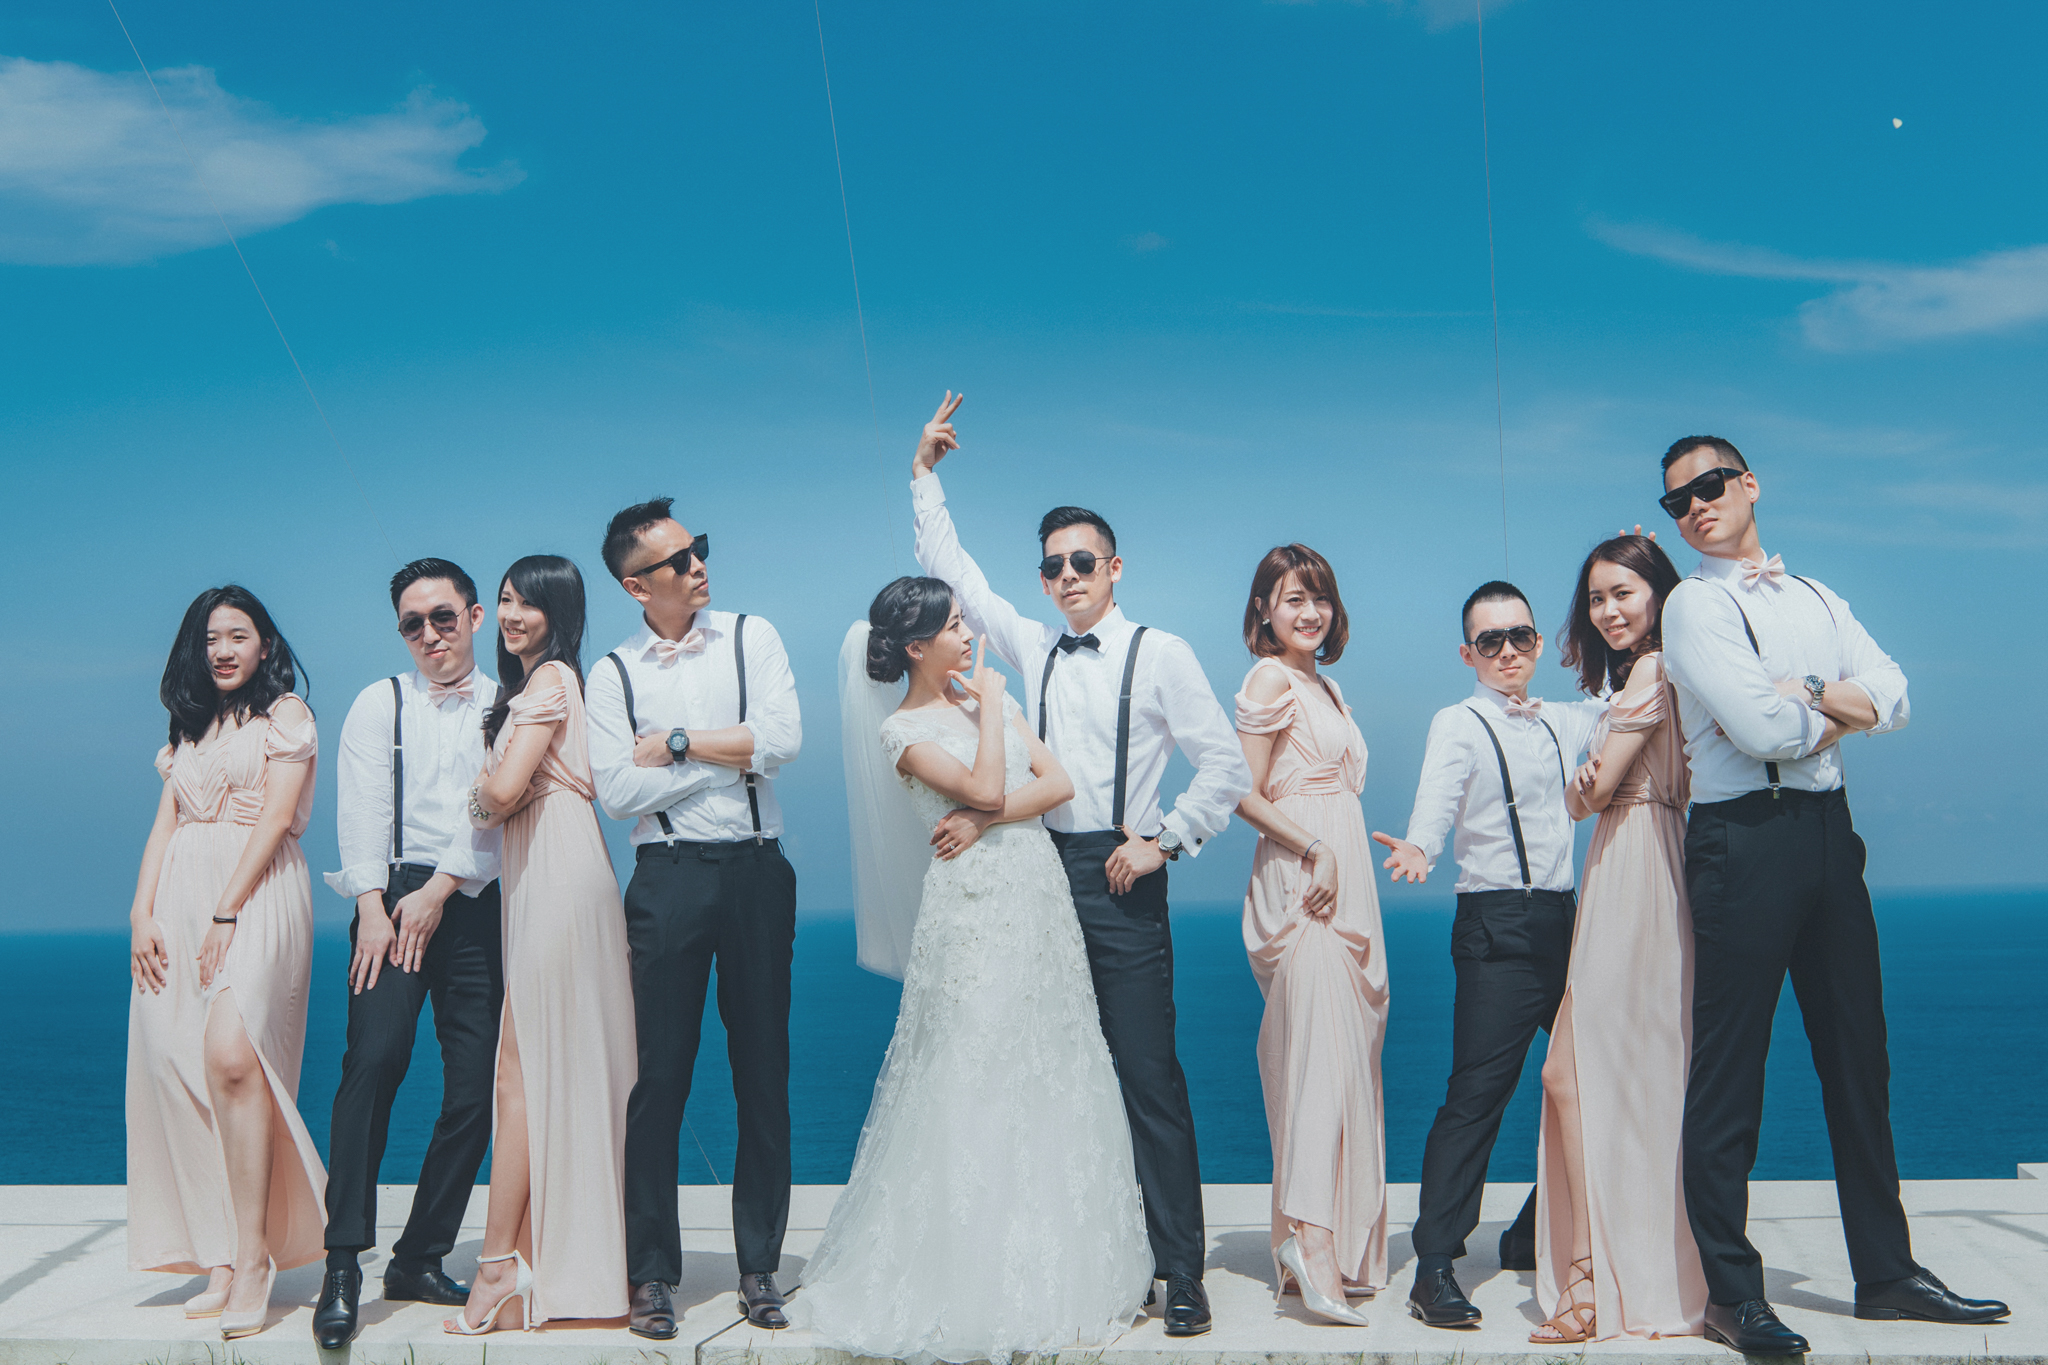 峇里島 婚禮, 海外婚禮, 婚禮紀錄, 婚攝東法, 雙攝影師, 藝術婚禮, Bali alila uluwatu, Donfer, Donfer Photography, EASTERN WEDDING, Wedding Day